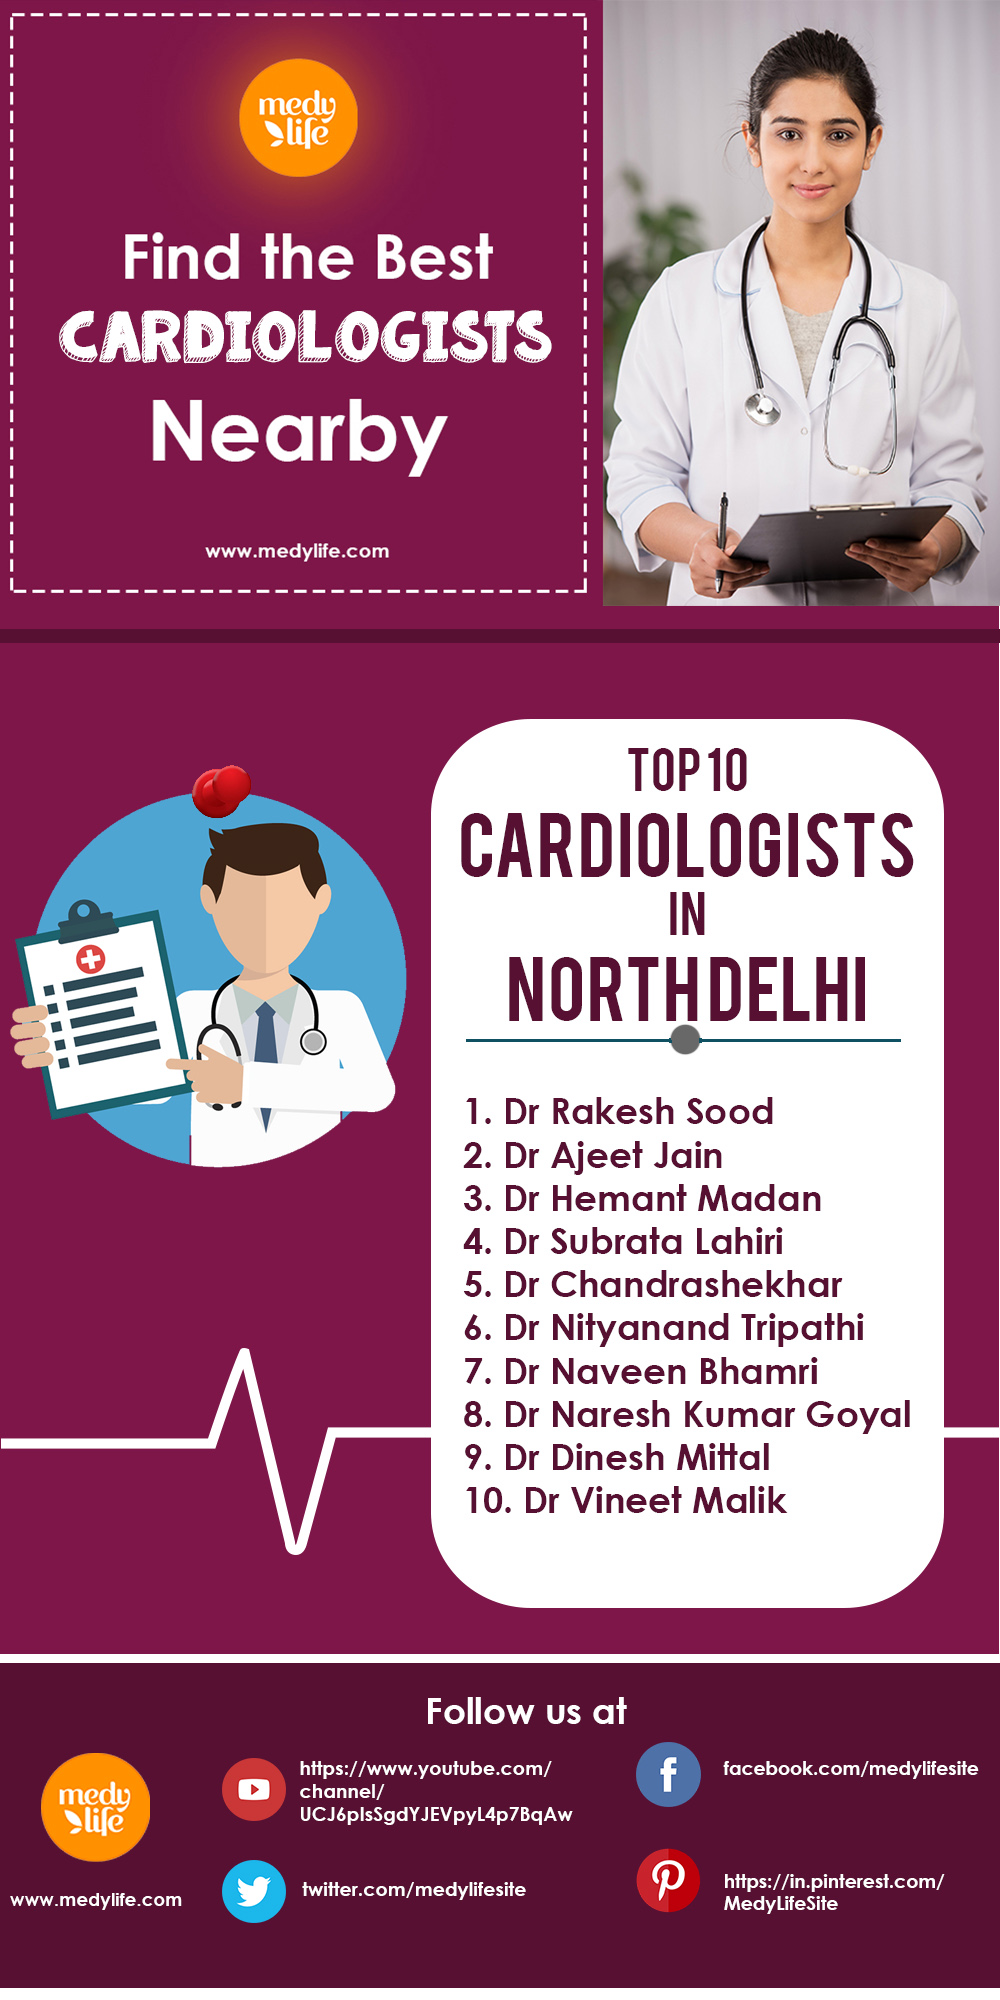 Top 10 Cardiologists in North DelhiINFO